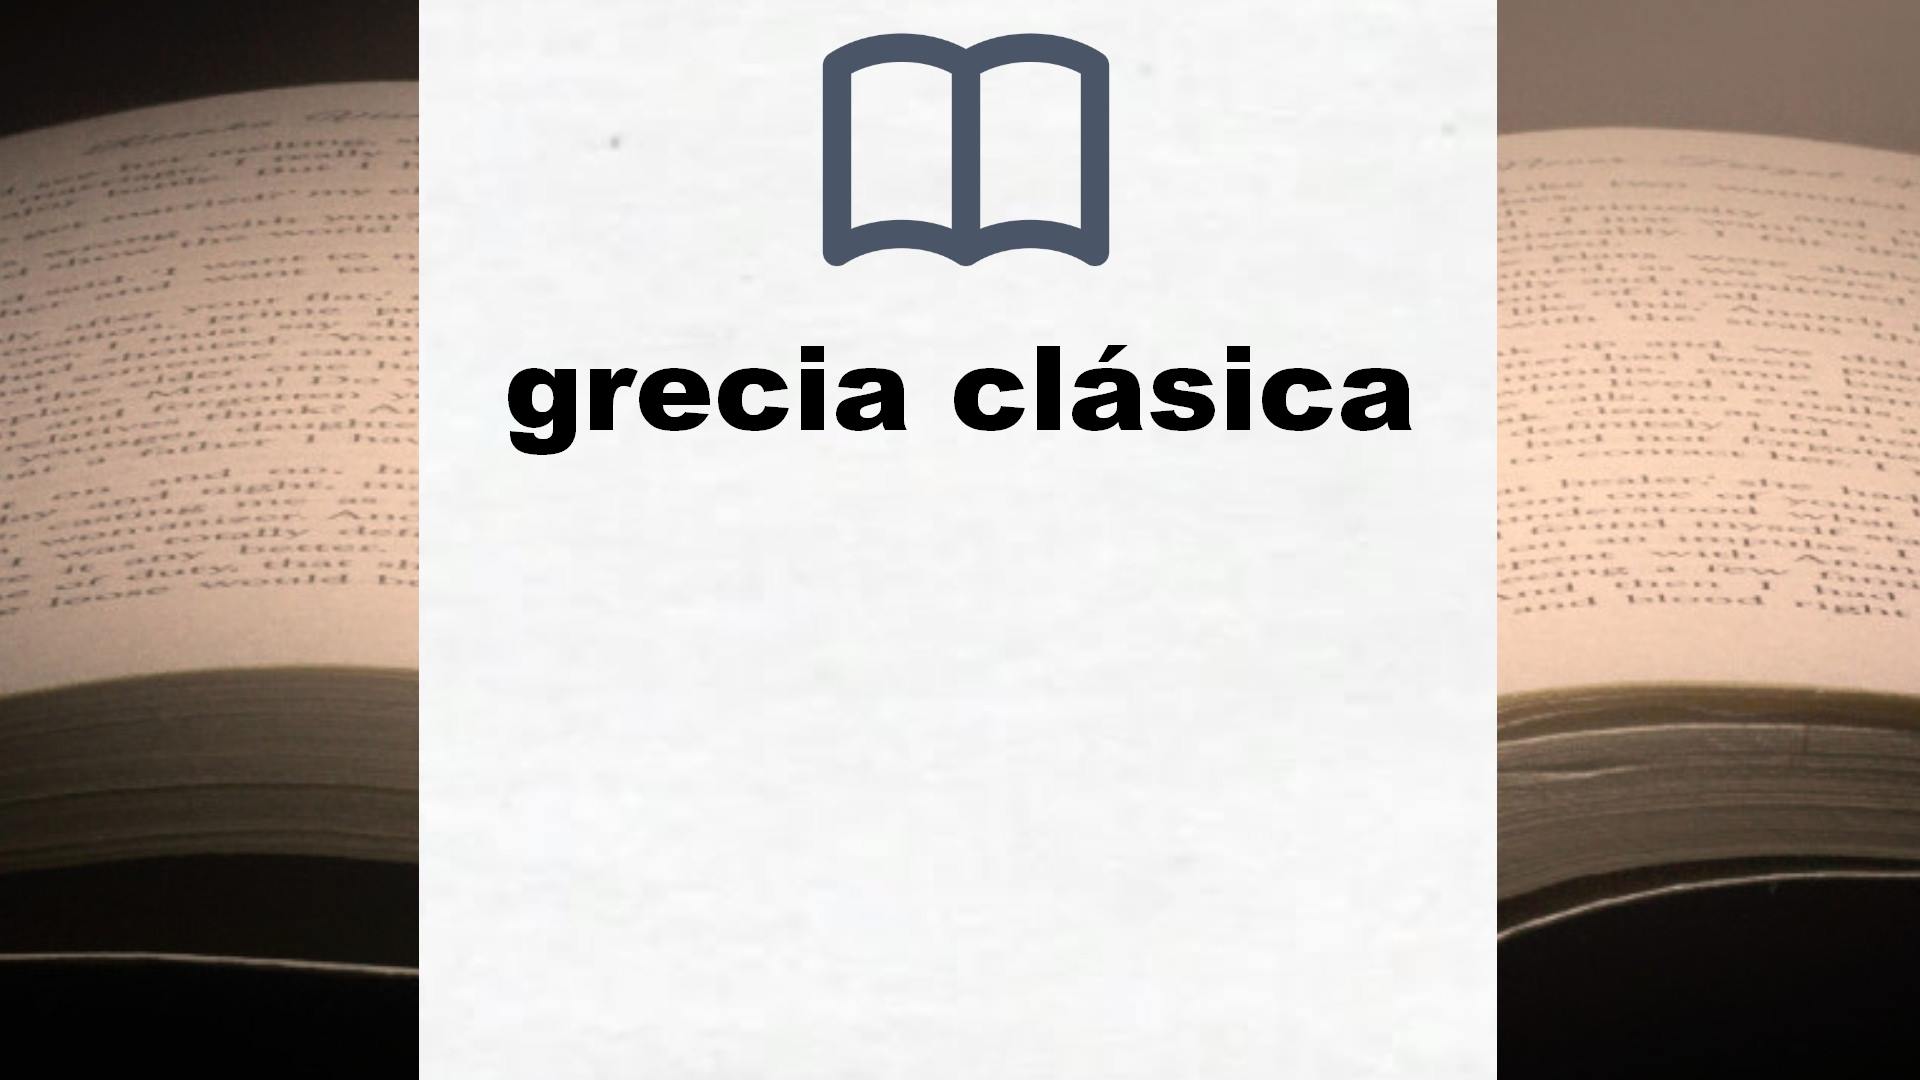 Libros sobre grecia clásica